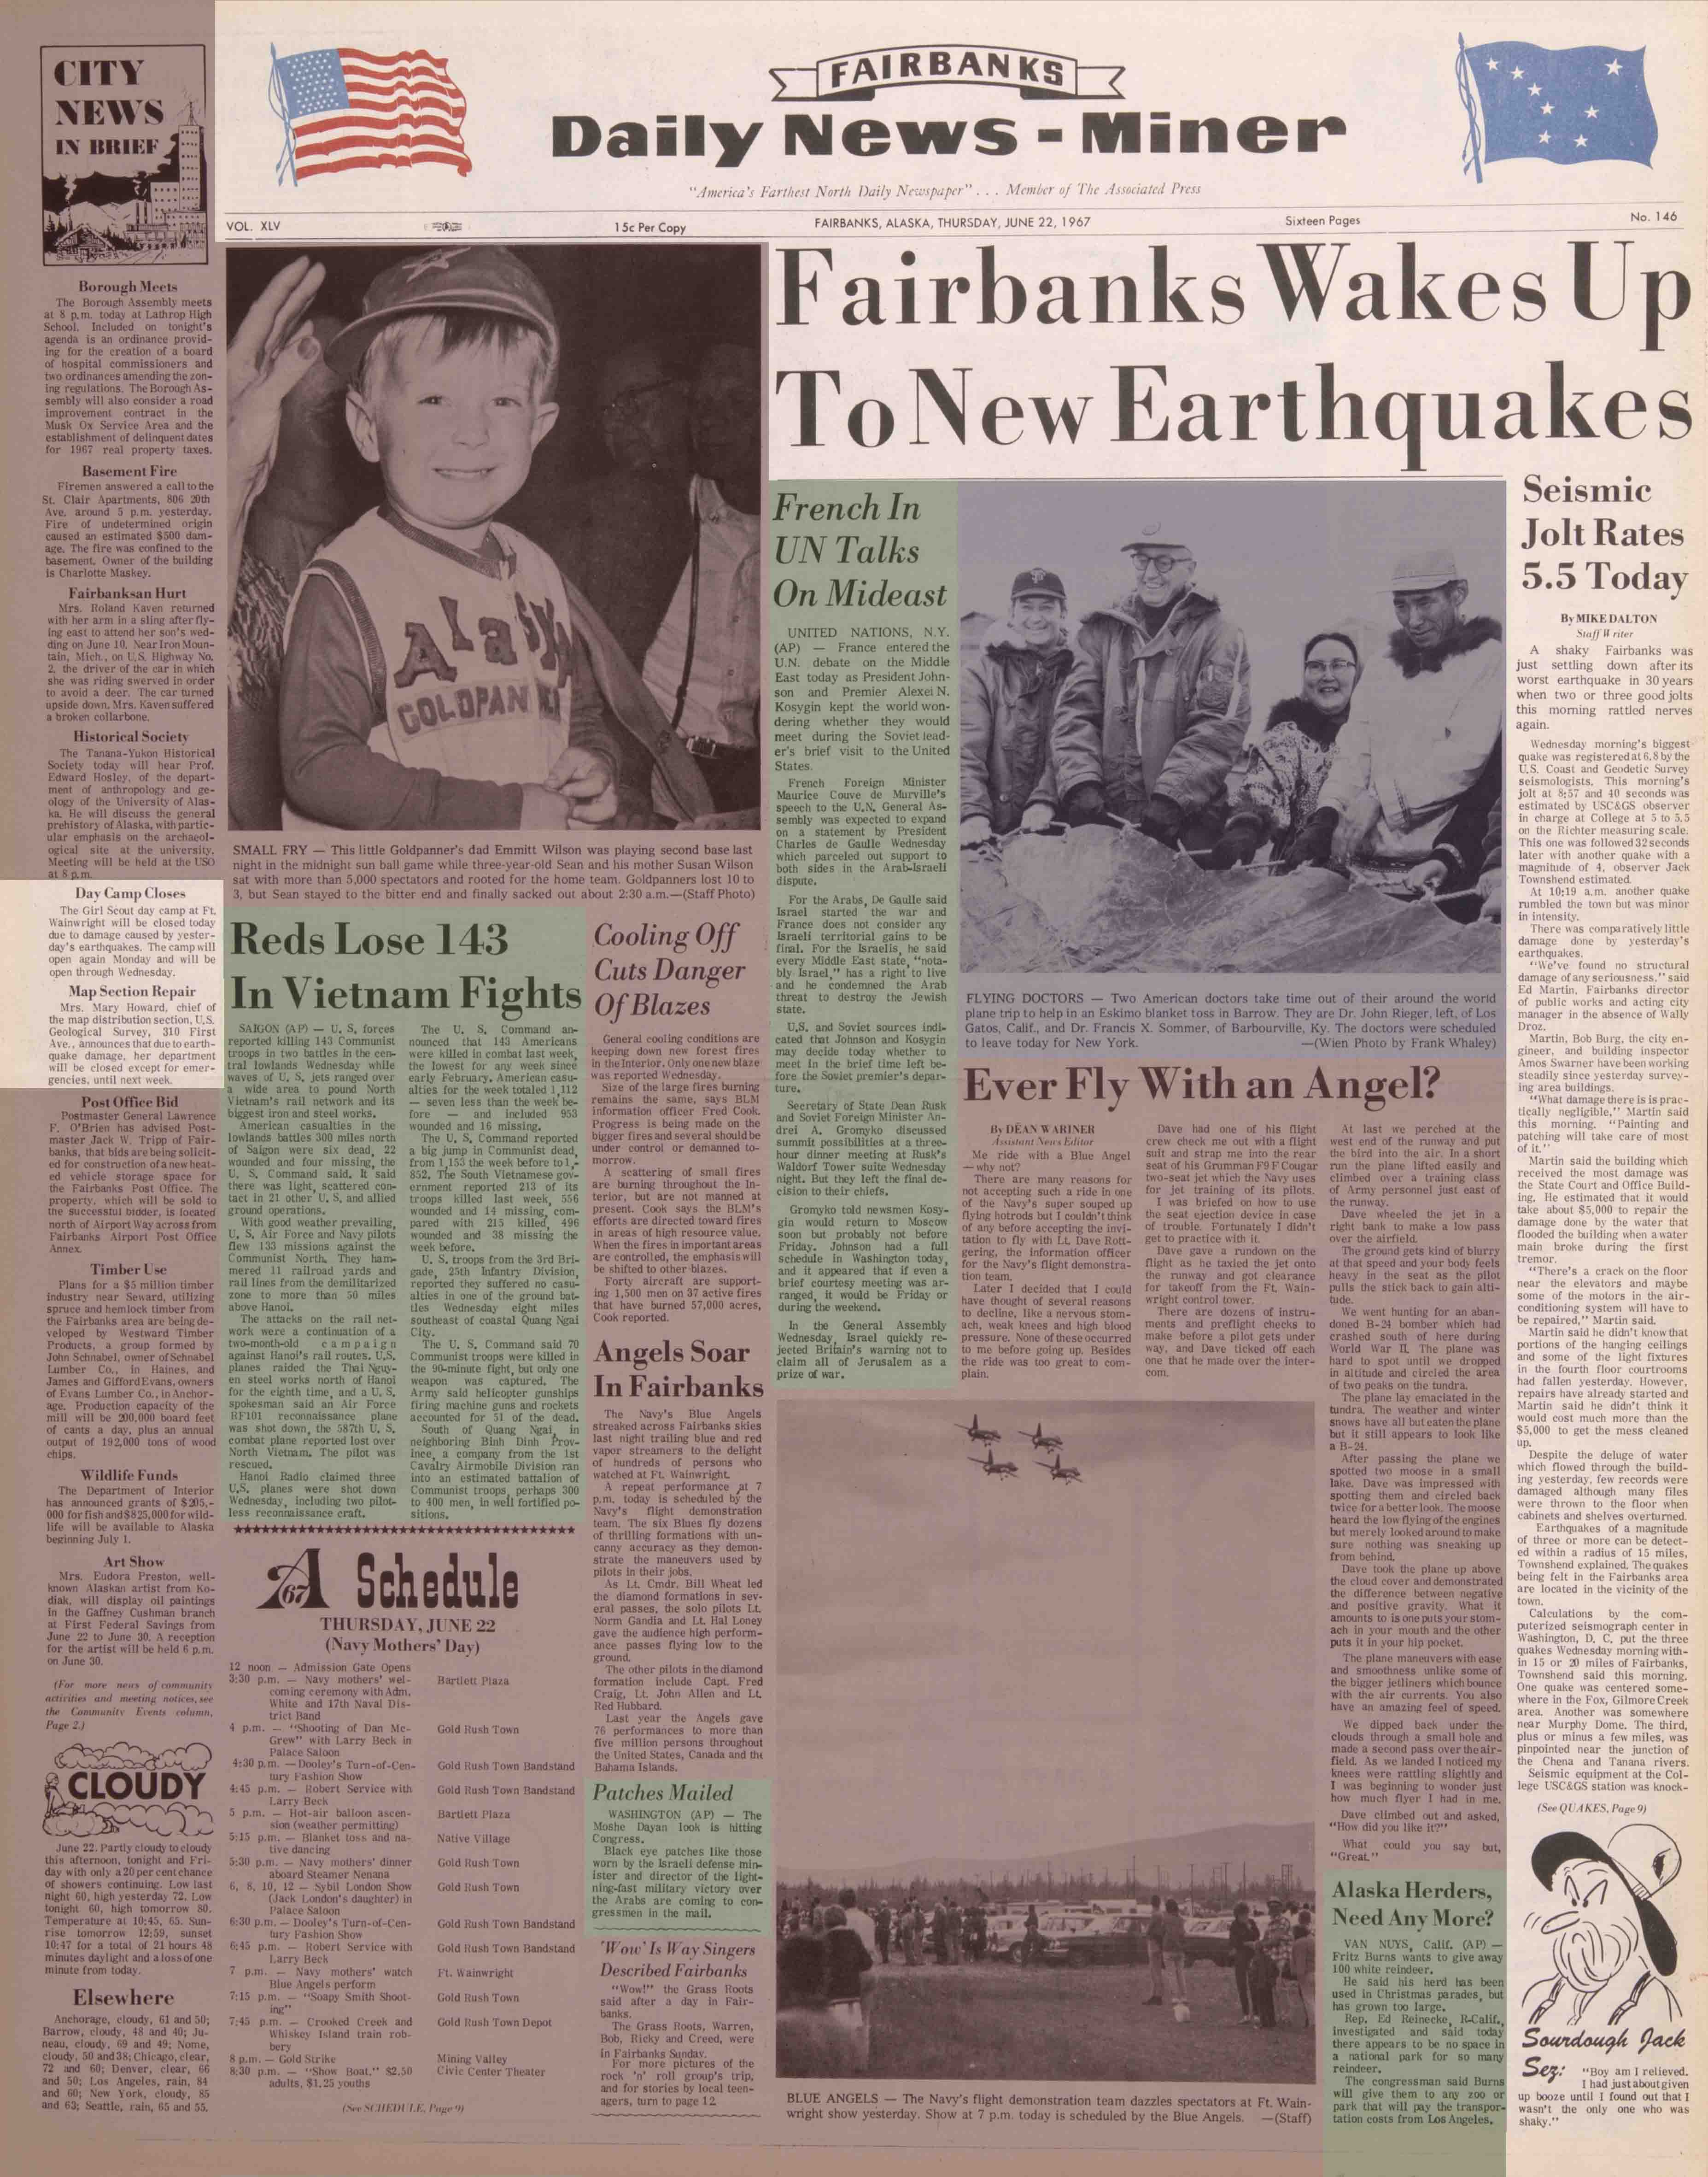 1967 June 22, Fairbanks Daily News-Miner (pg 1)